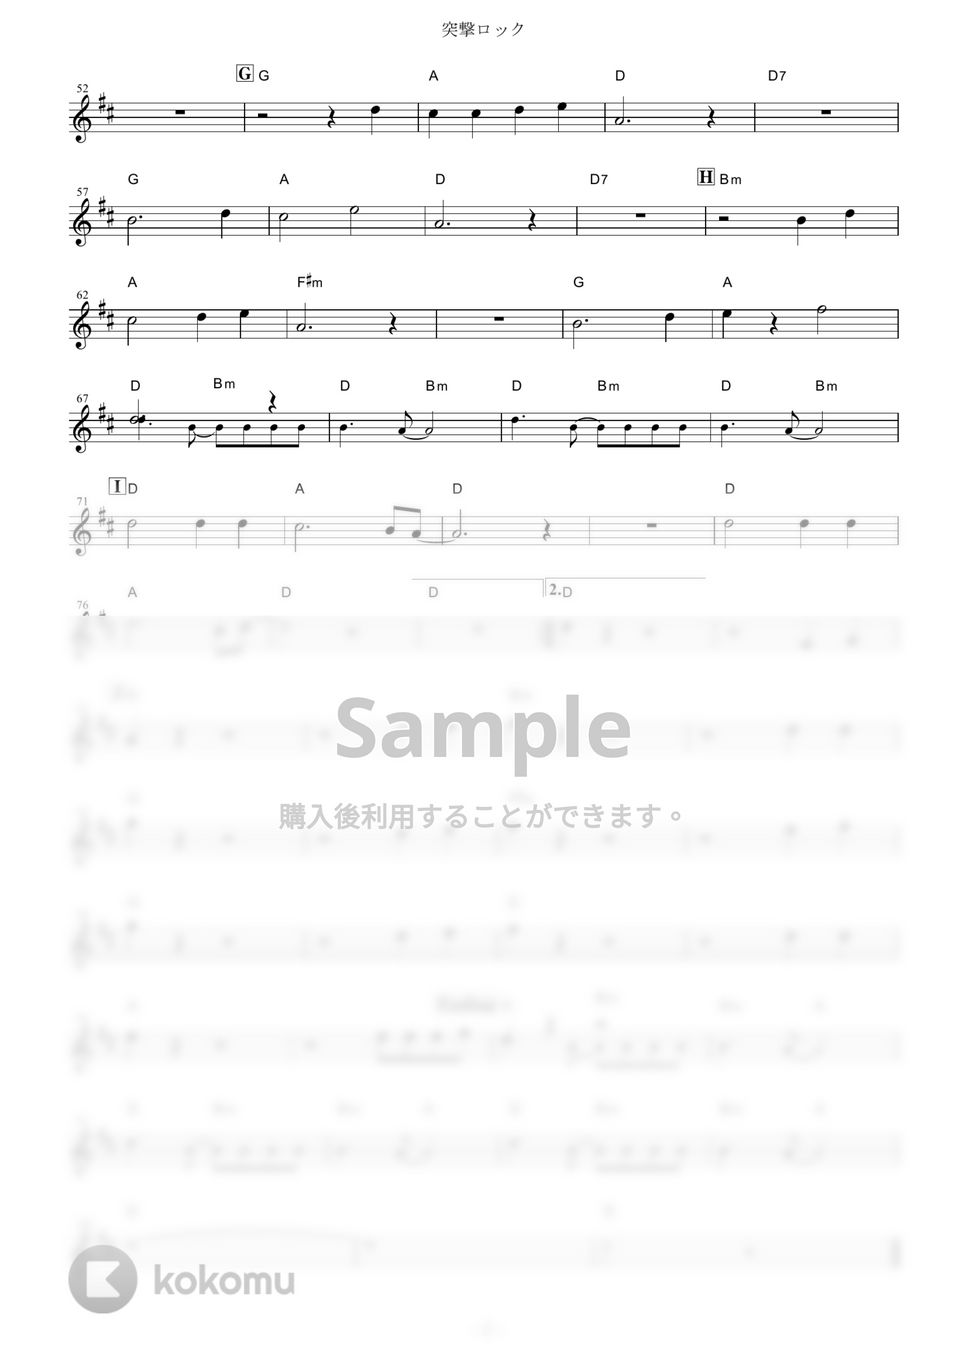 ザ・クロマニヨンズ - 突撃ロック (『NARUTO-ナルト- 疾風伝』 / in C) by muta-sax